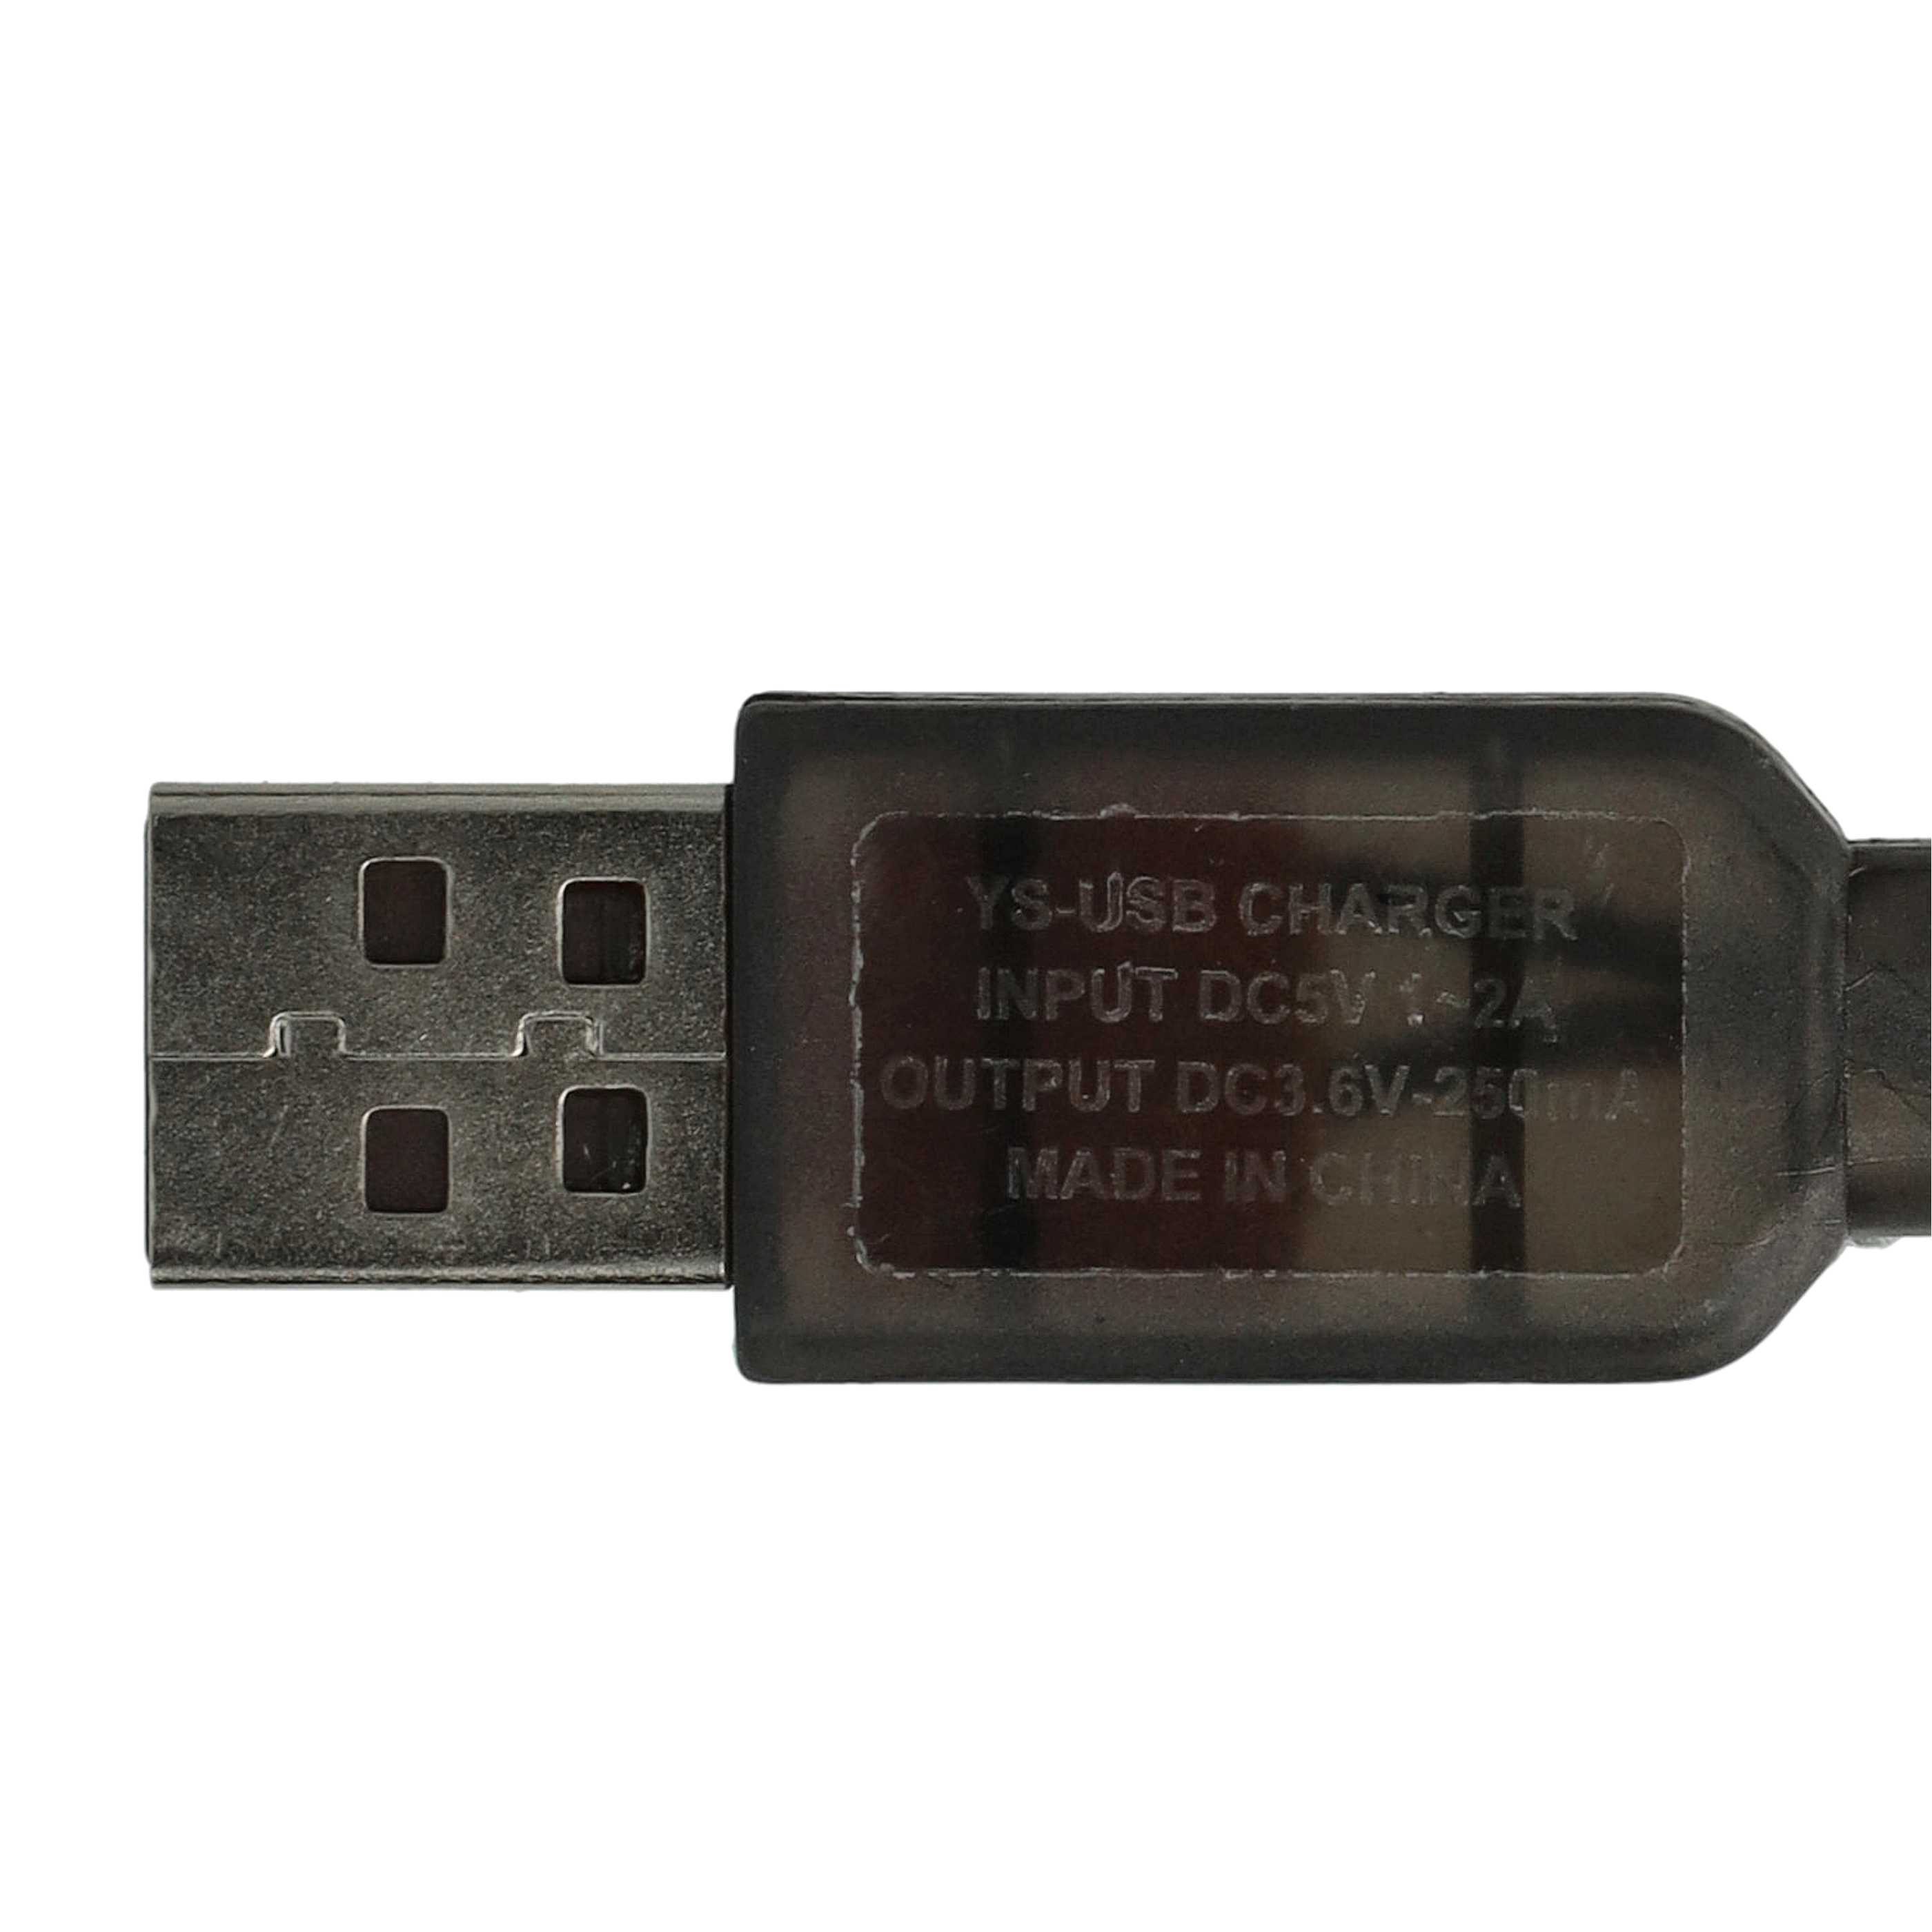 Cable de carga USB para batería SM-2P, modelo RC - 60 cm 3,6 V